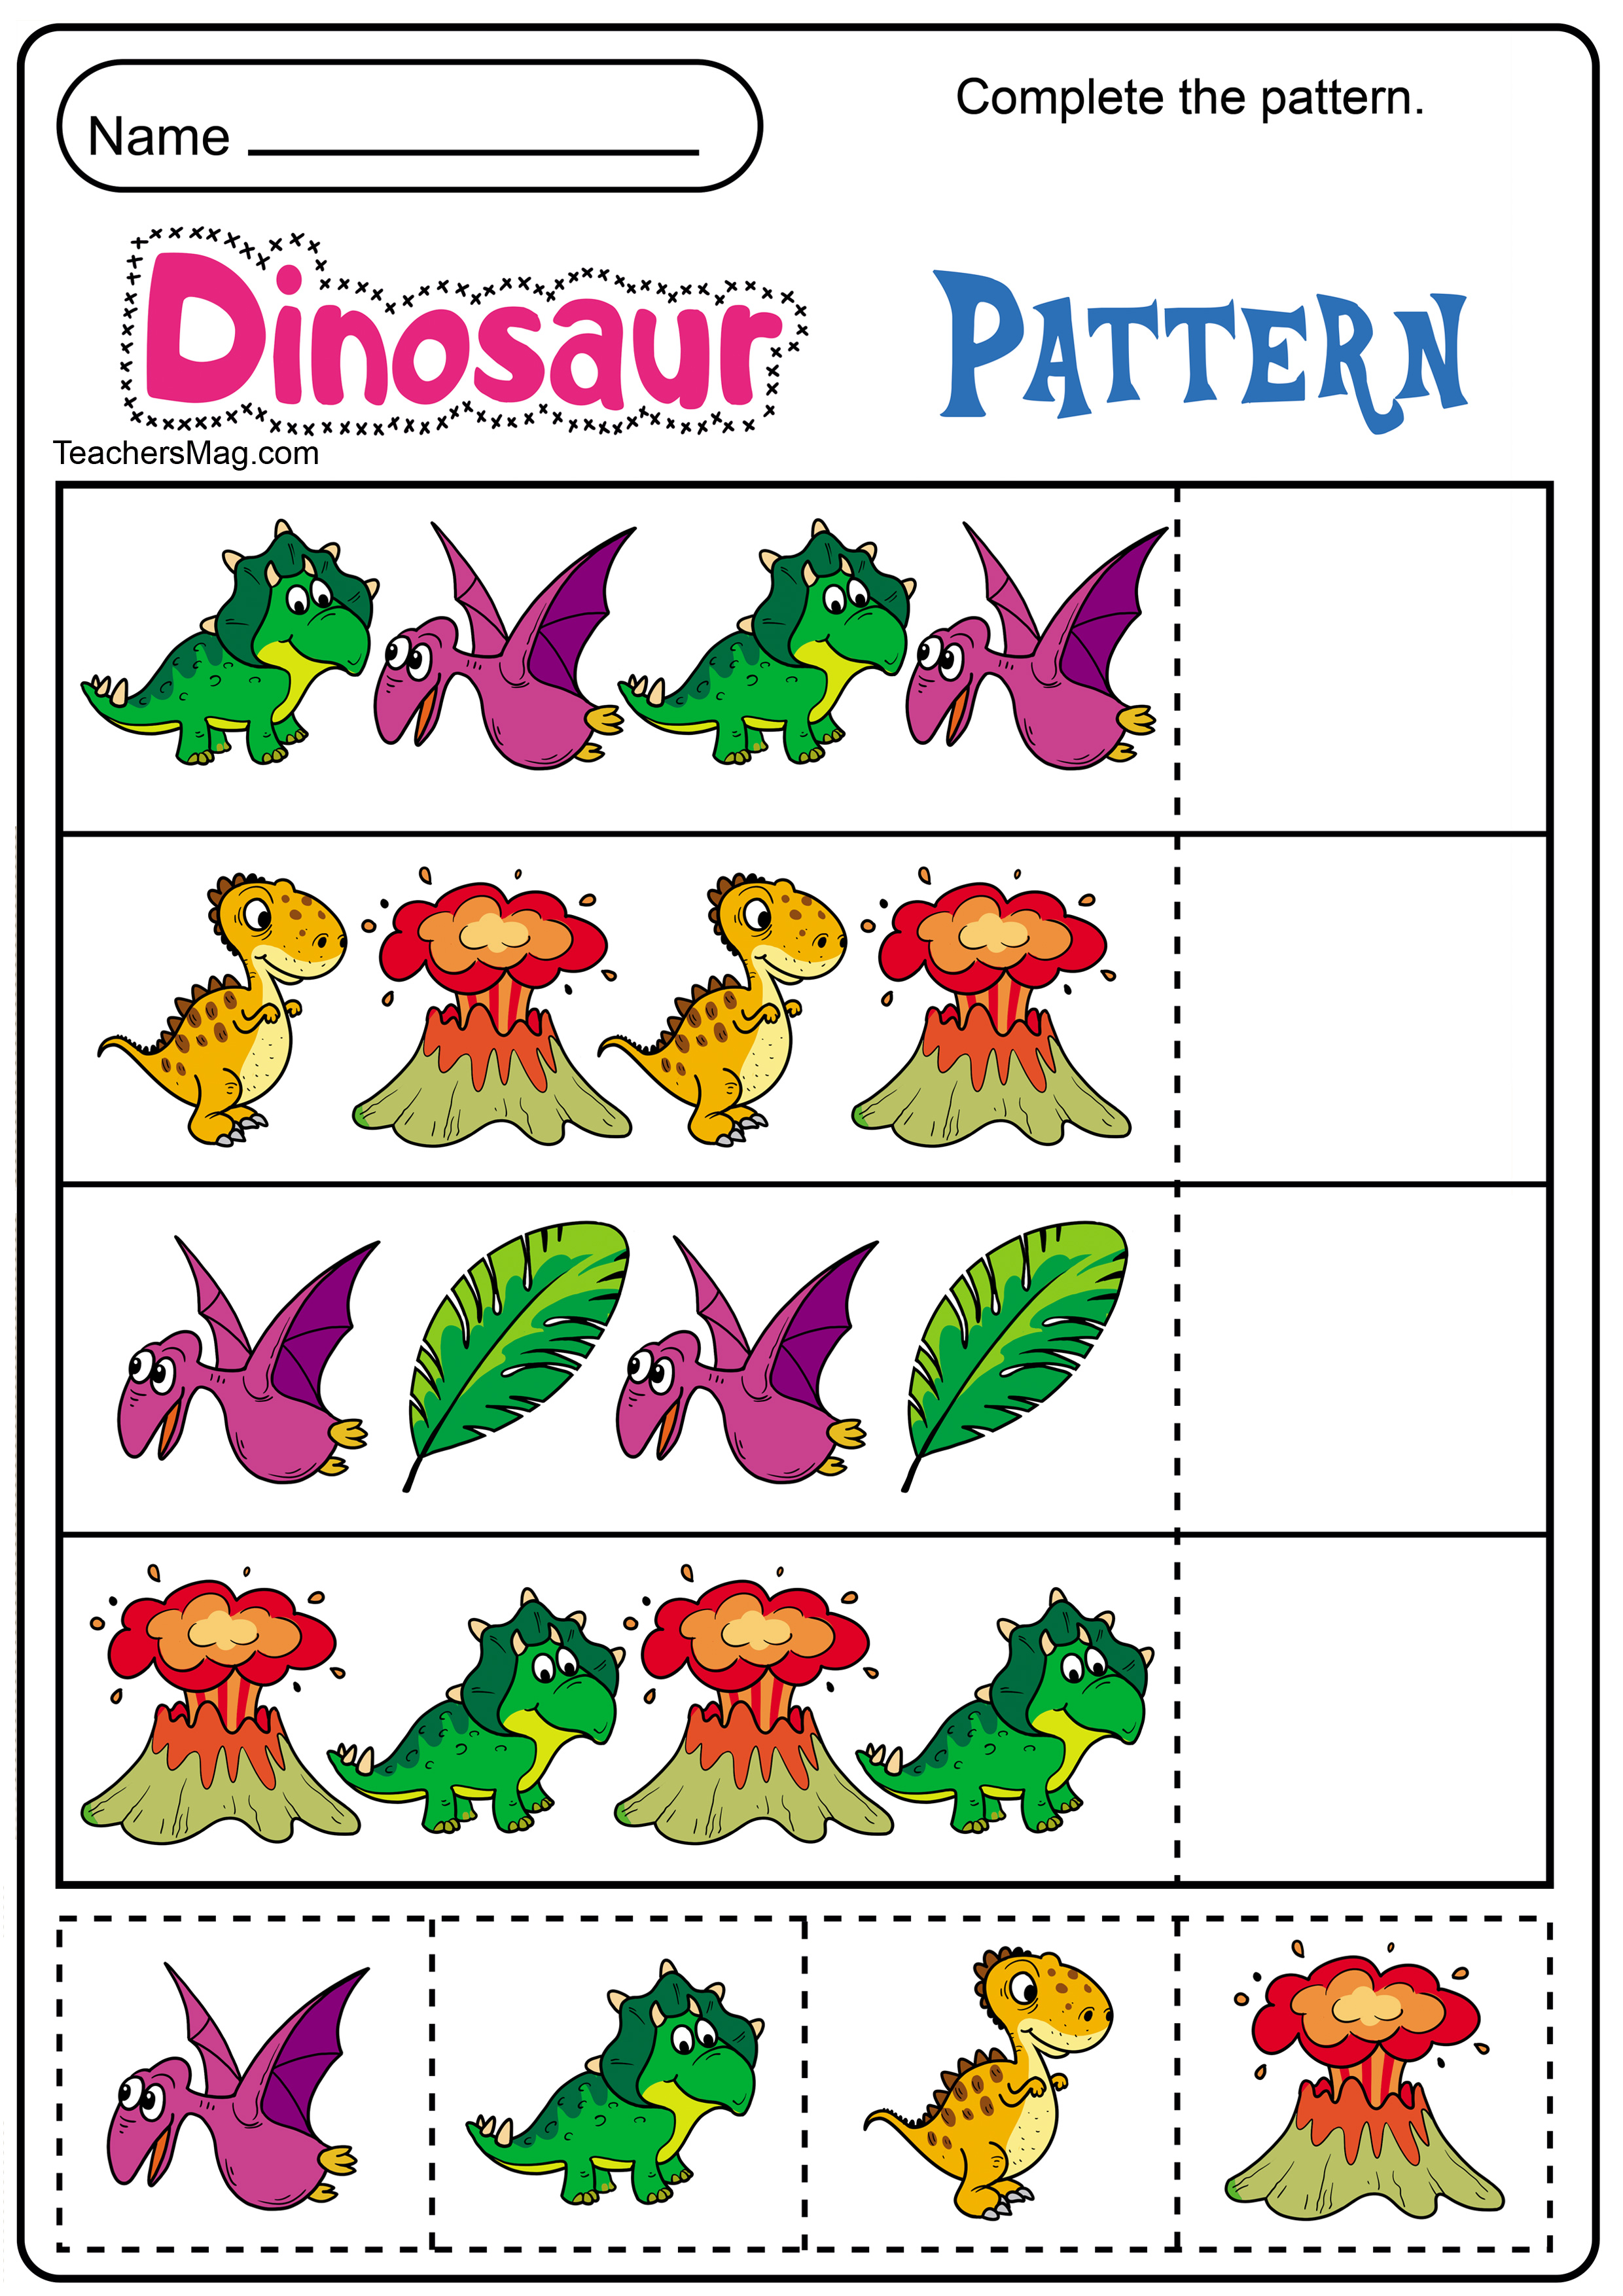 Free Printable Preschool Themes